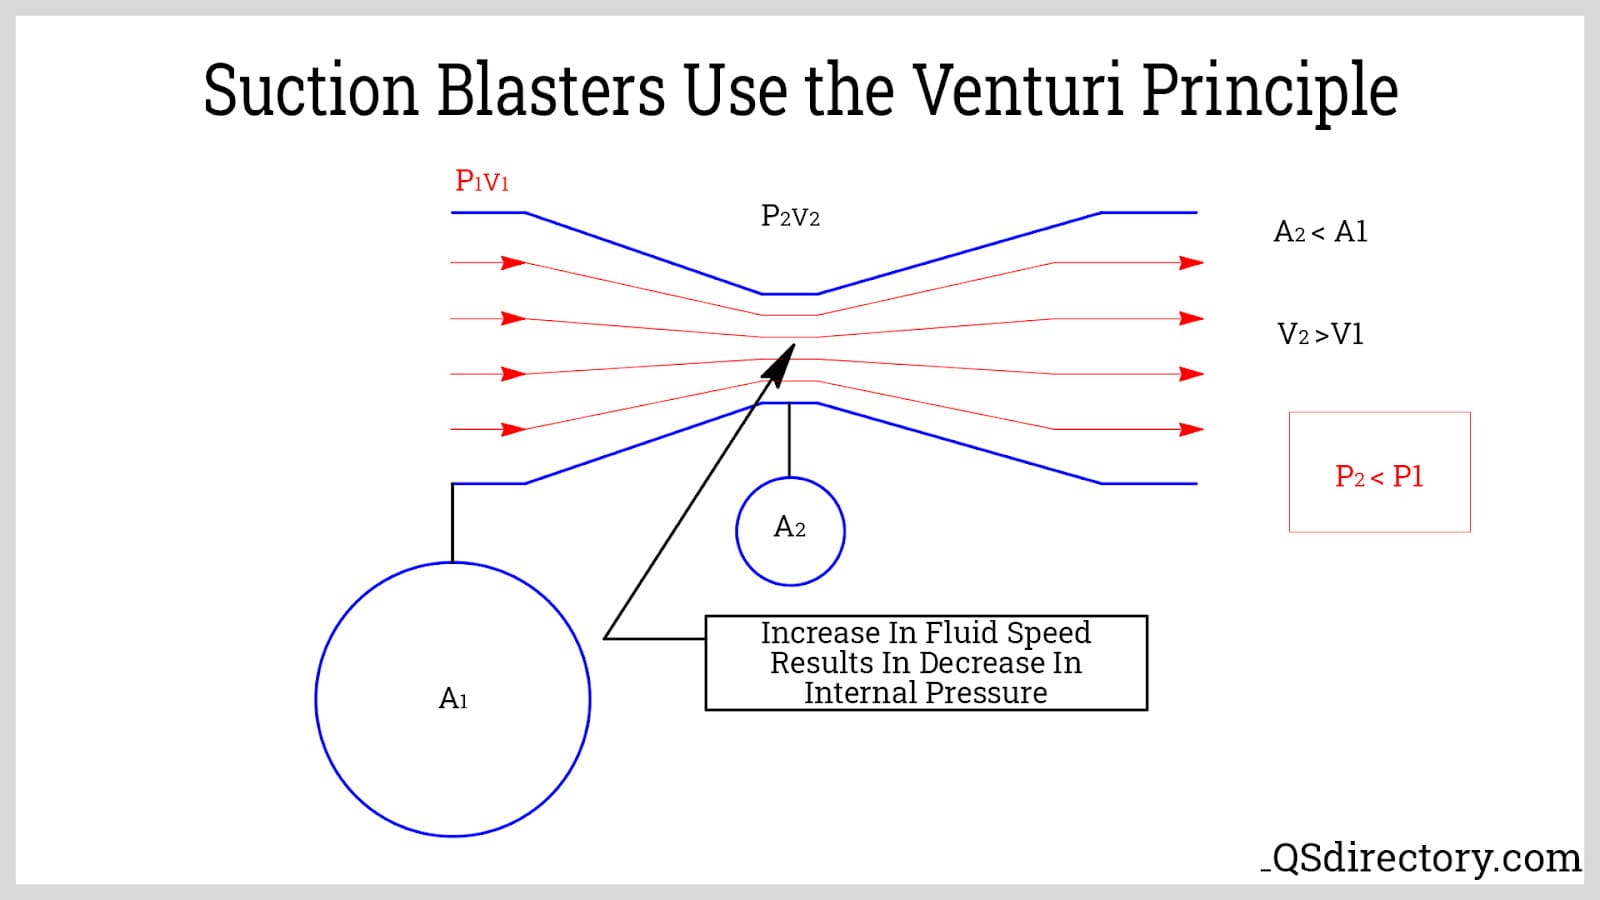 Suction Blasters Use the Venturi Principle